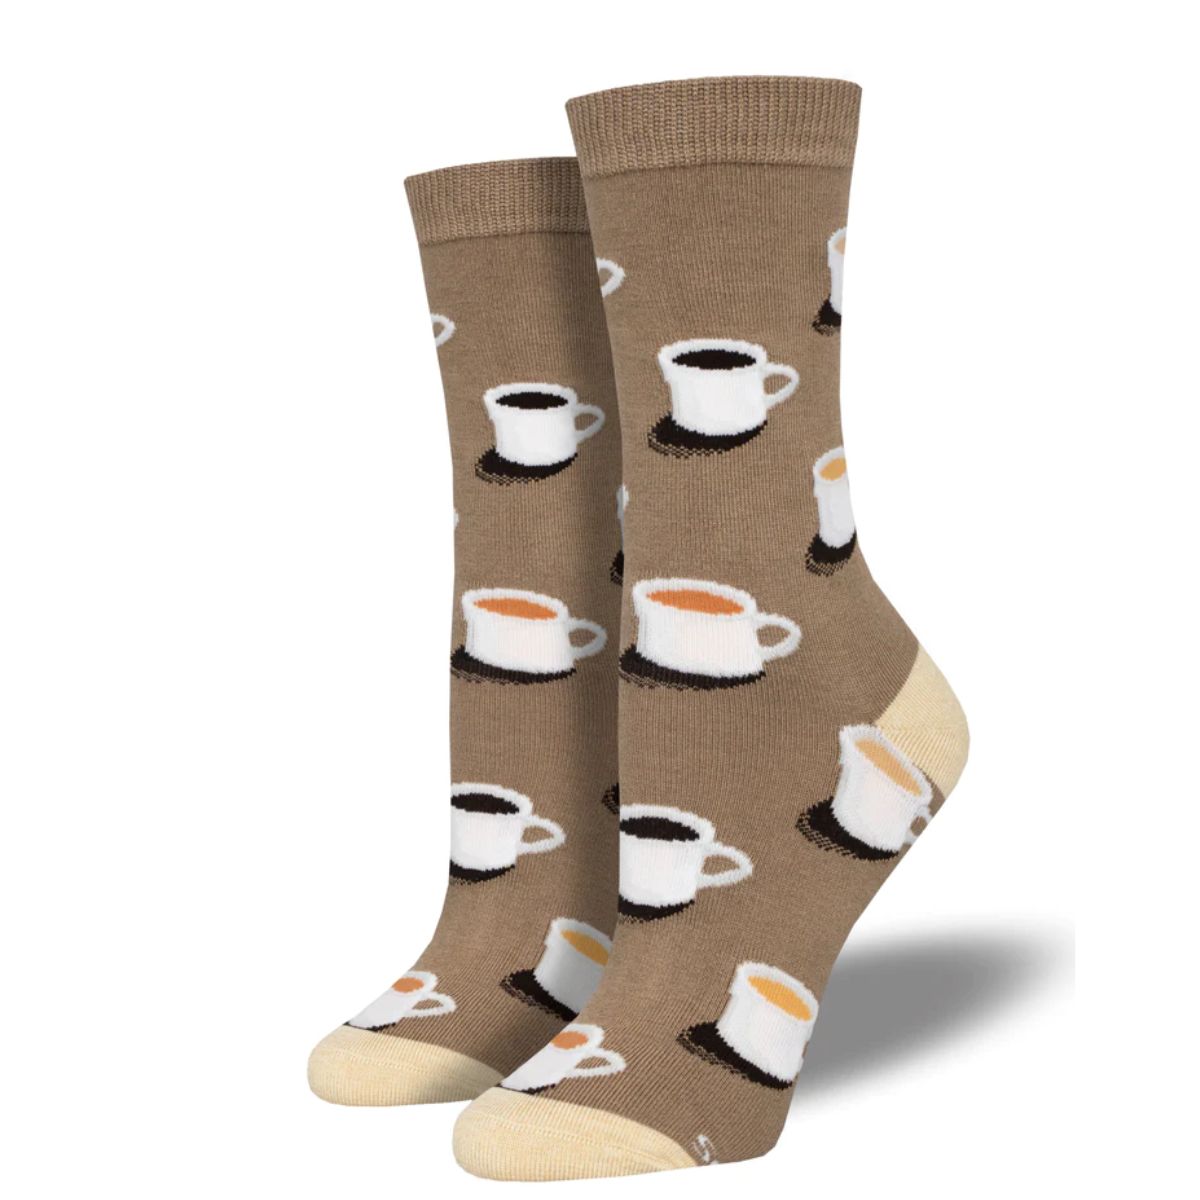 cup of joe socks a pair of brown crew socks with mug of coffee print